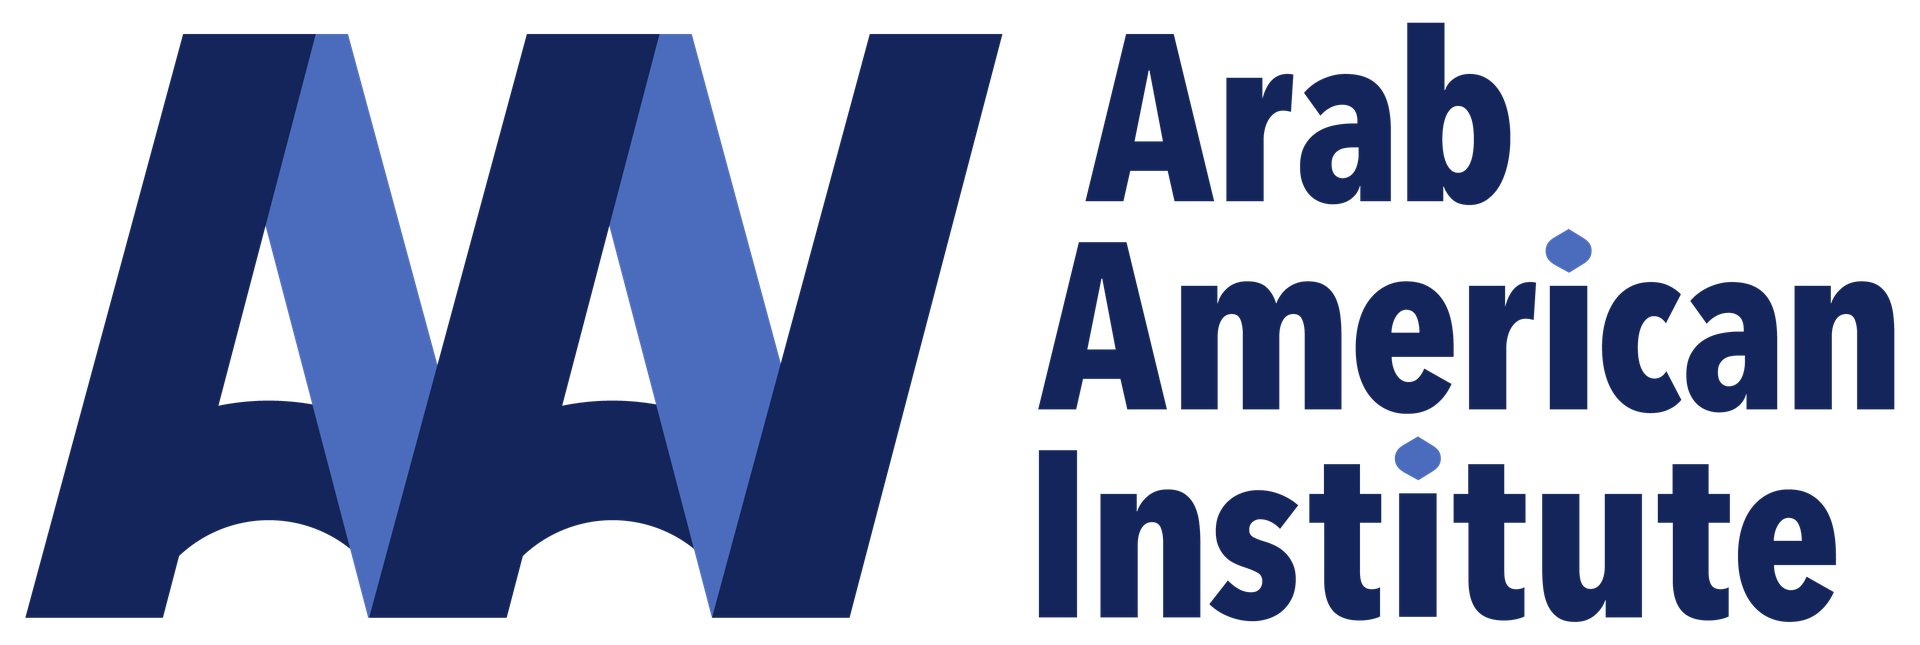 Arab American Institute Logo